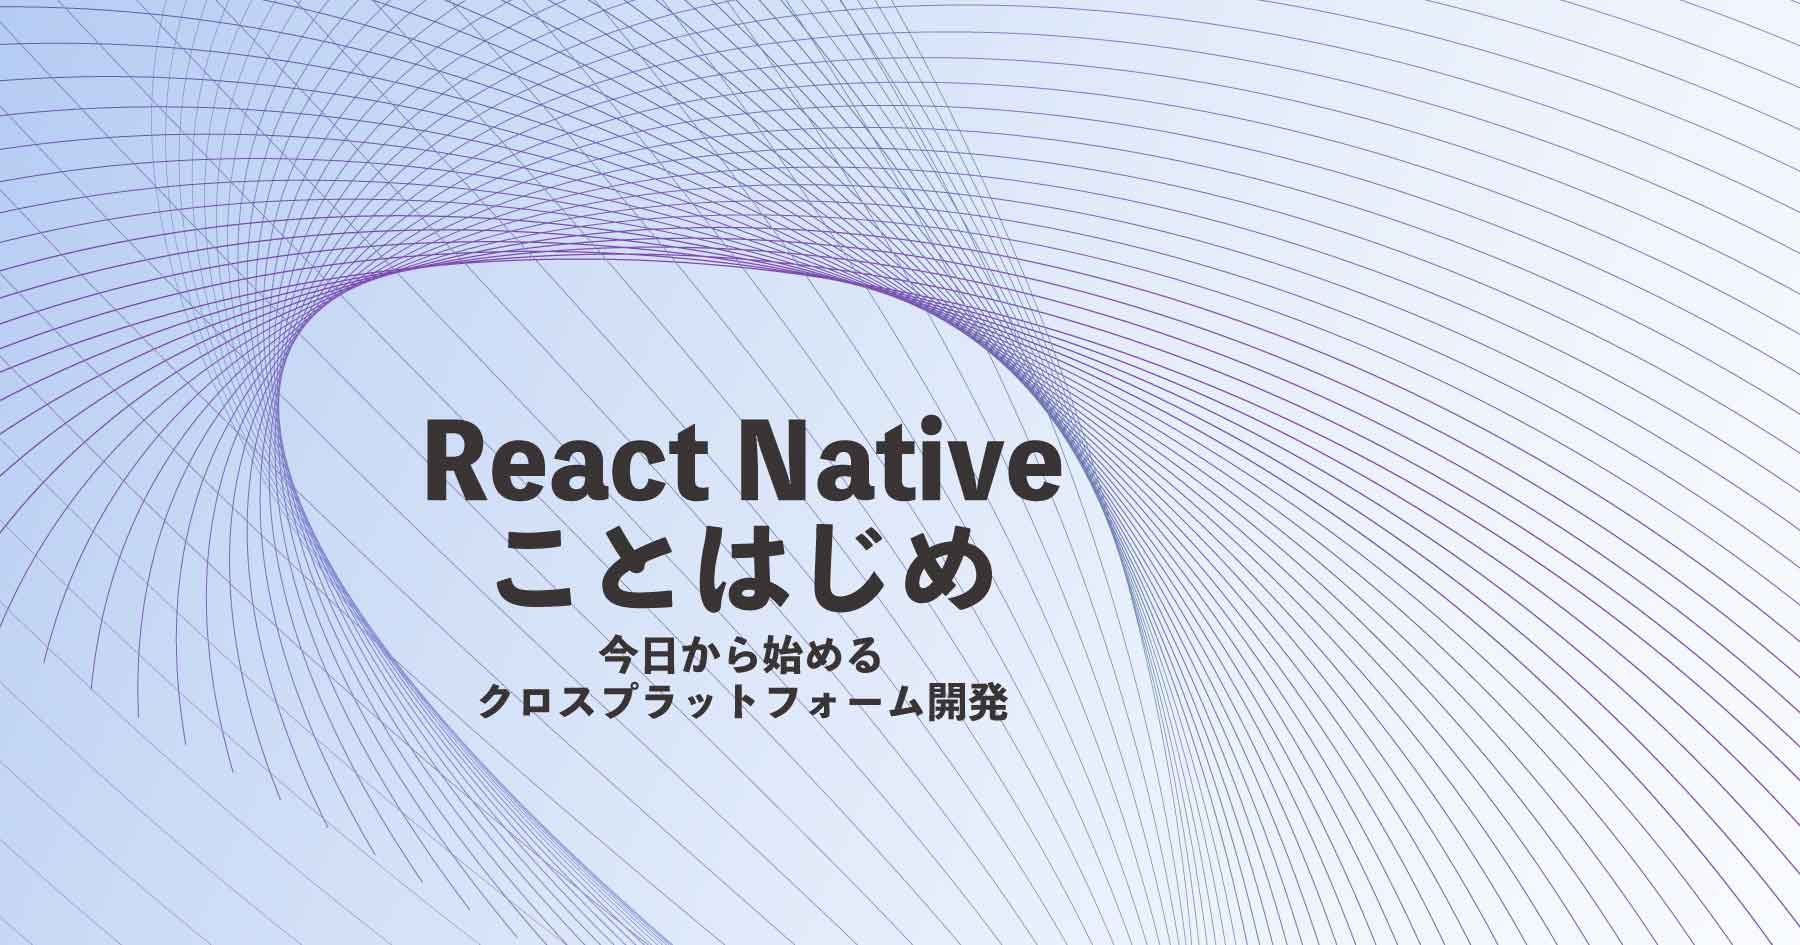 React Native導入ガイド - 環境構築からクロスプラットフォーム開発のメリットまでを理解する